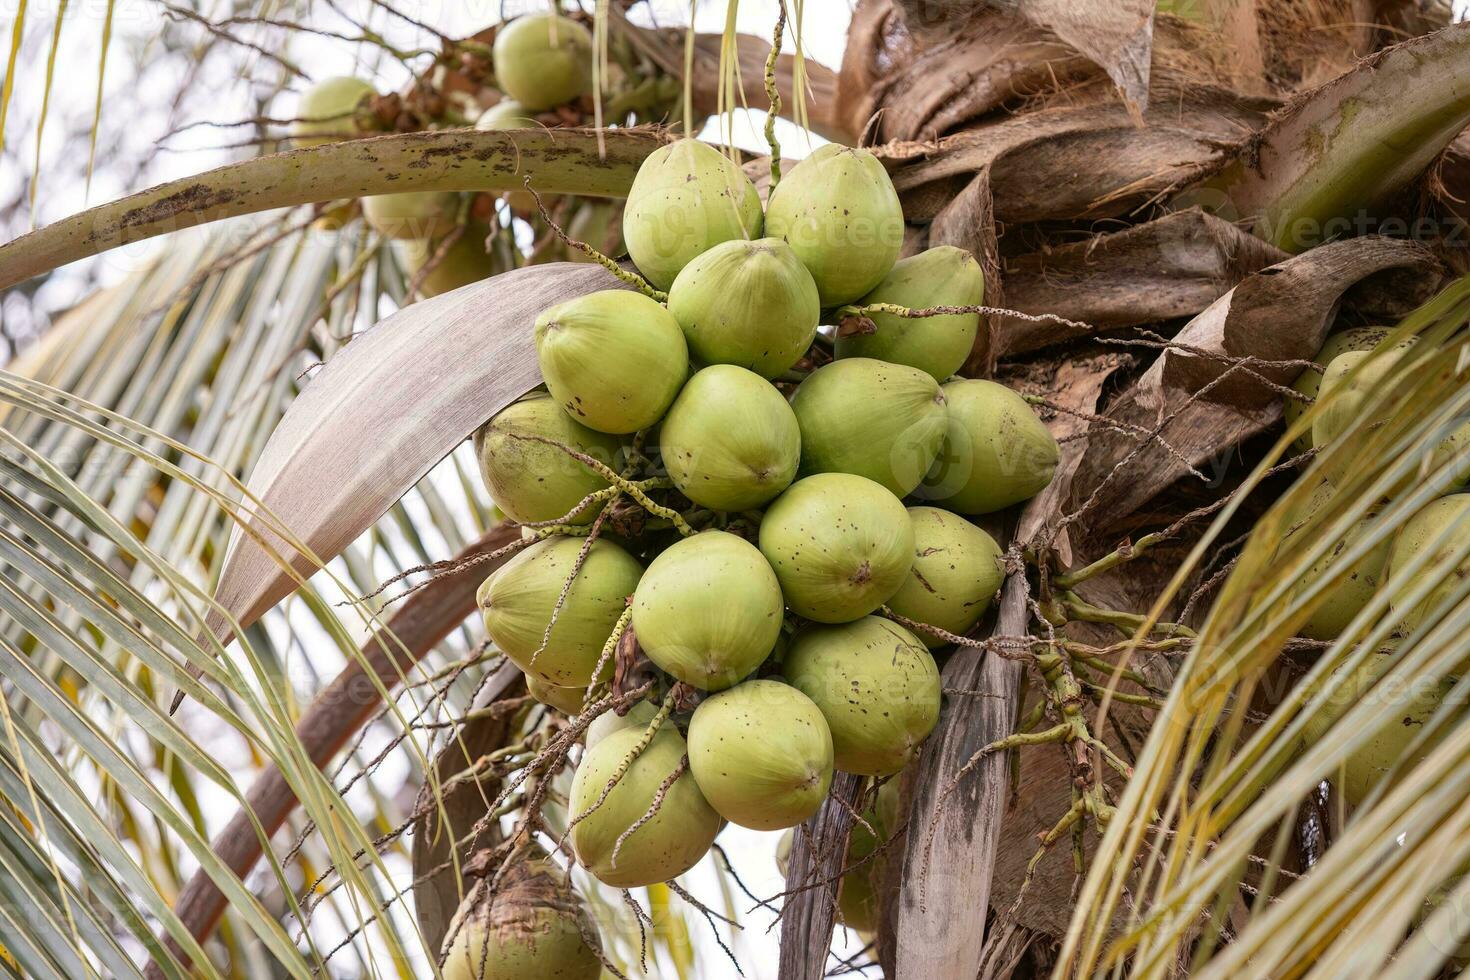 kokosnöt palmträd foto